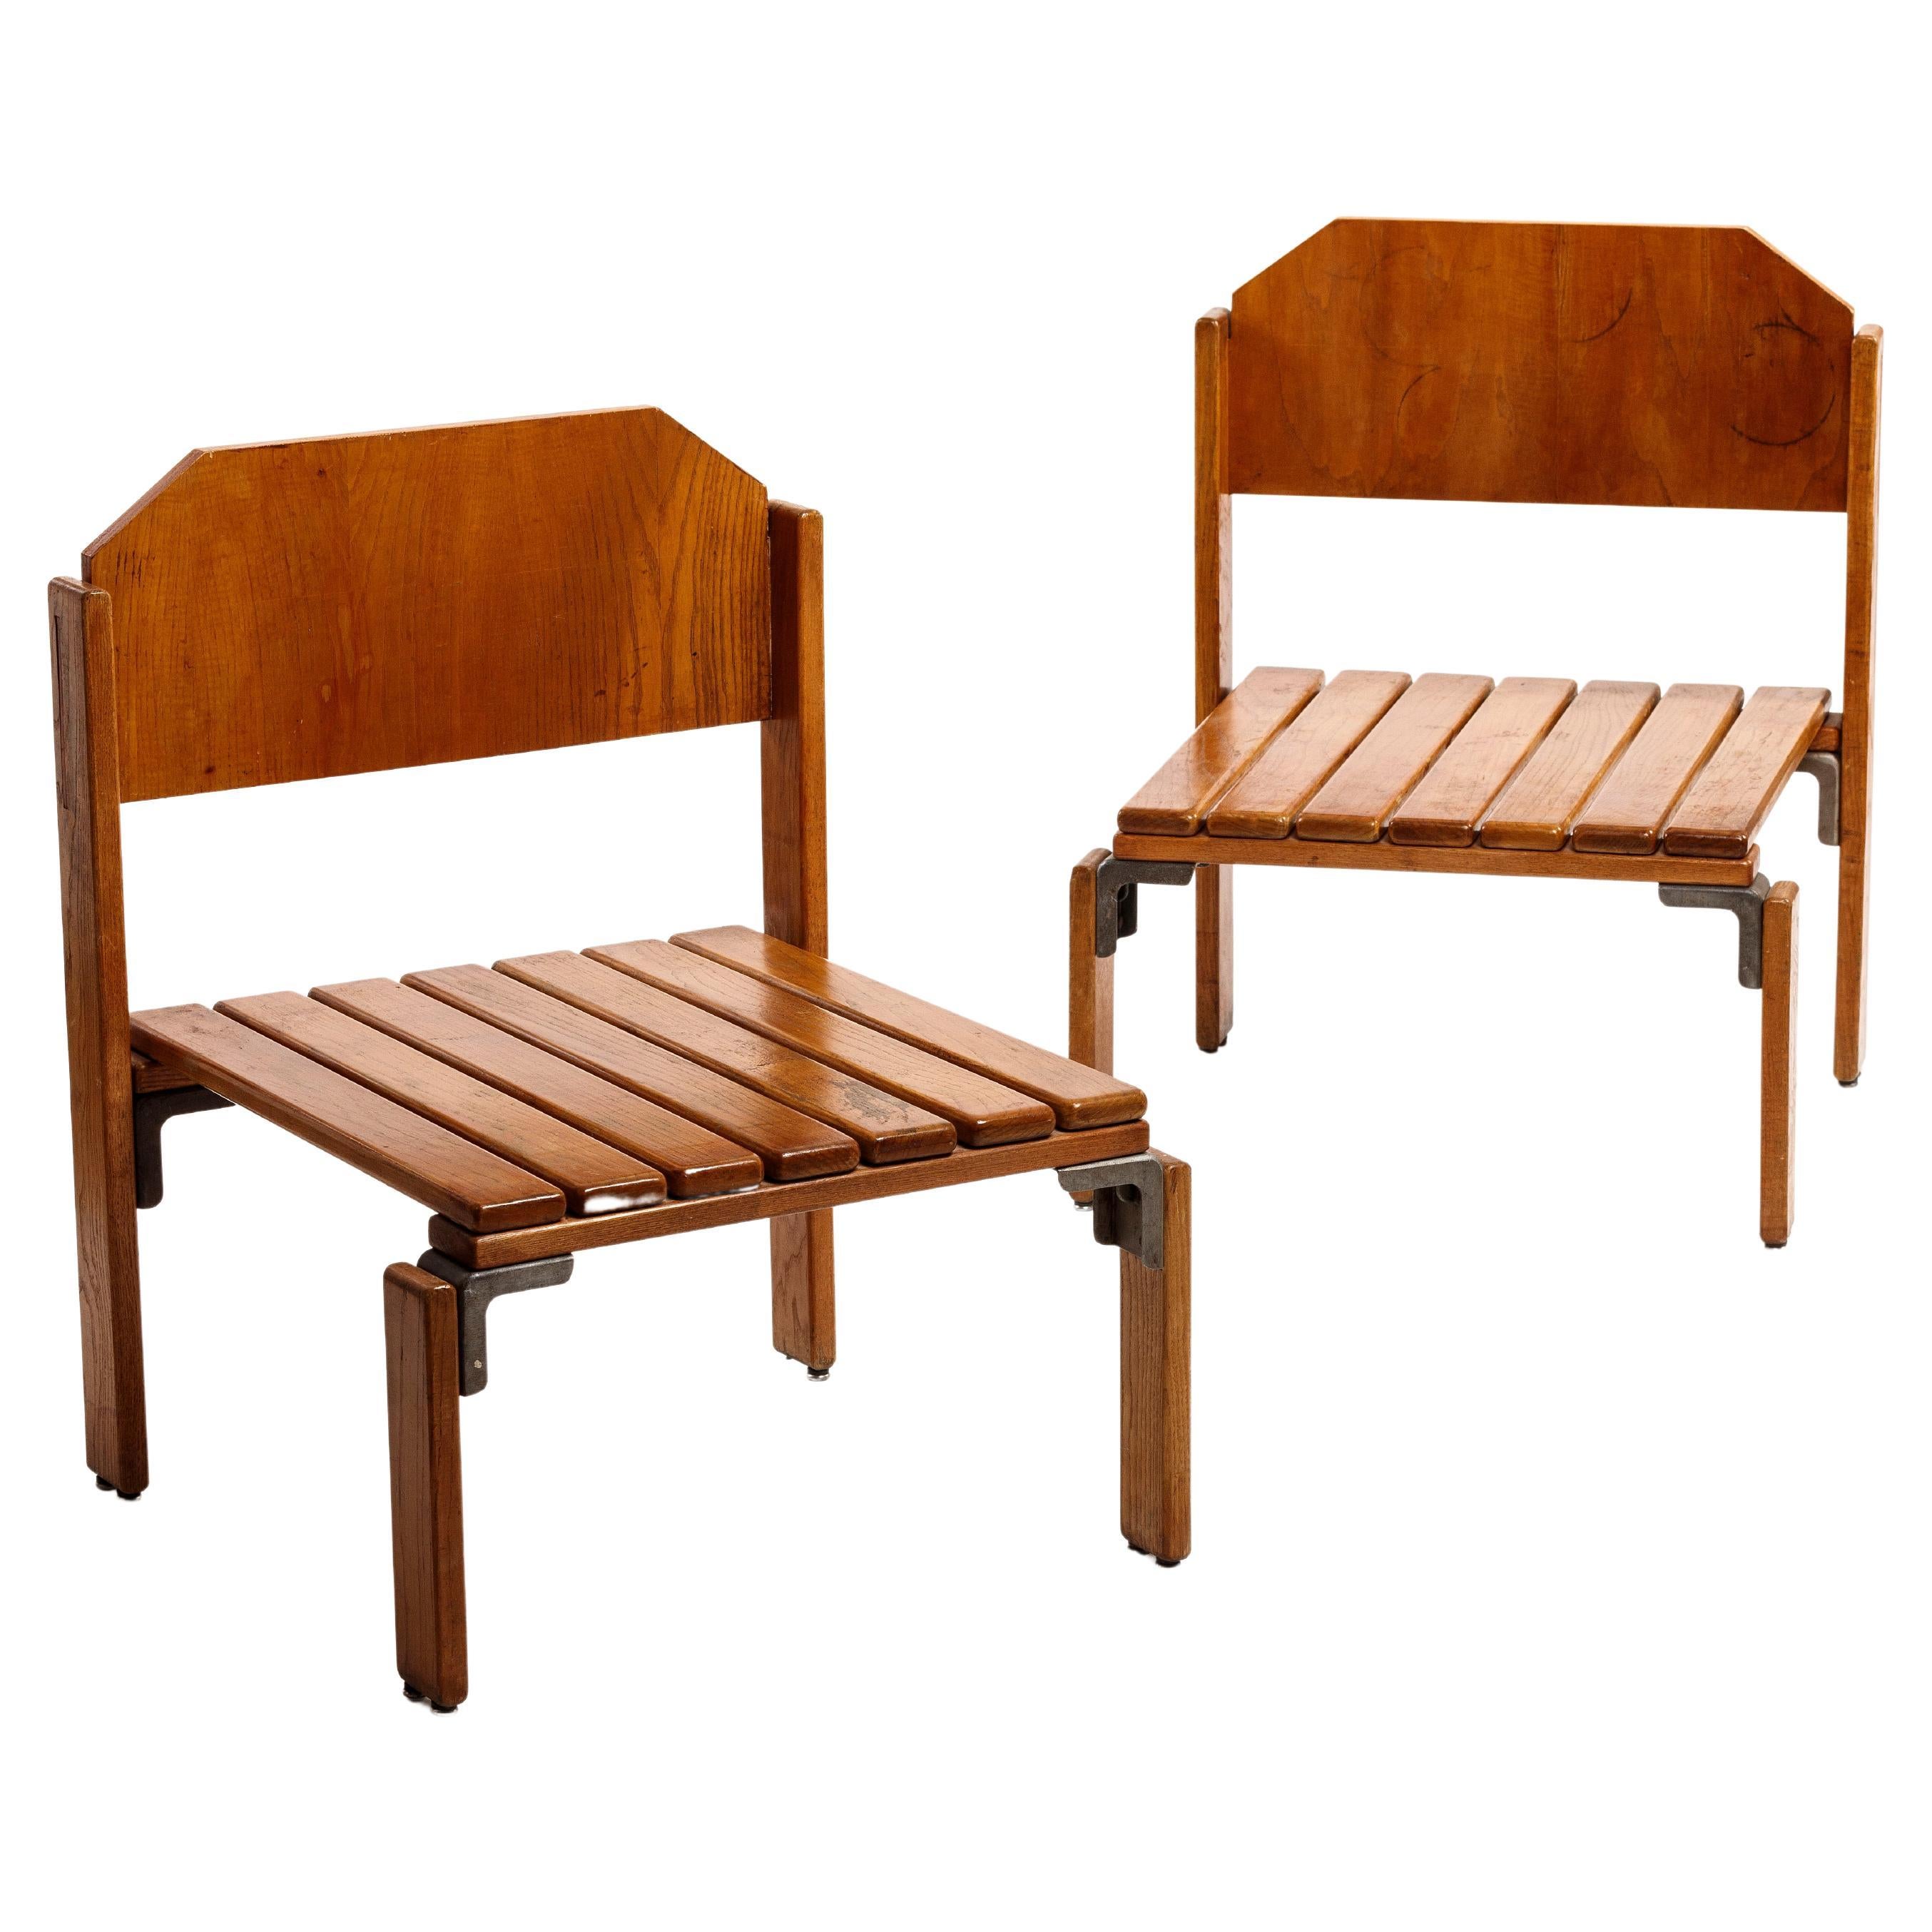 Seltene und ikonische große niedrige Stühle von Georges Candilis und Anja Blomstedt